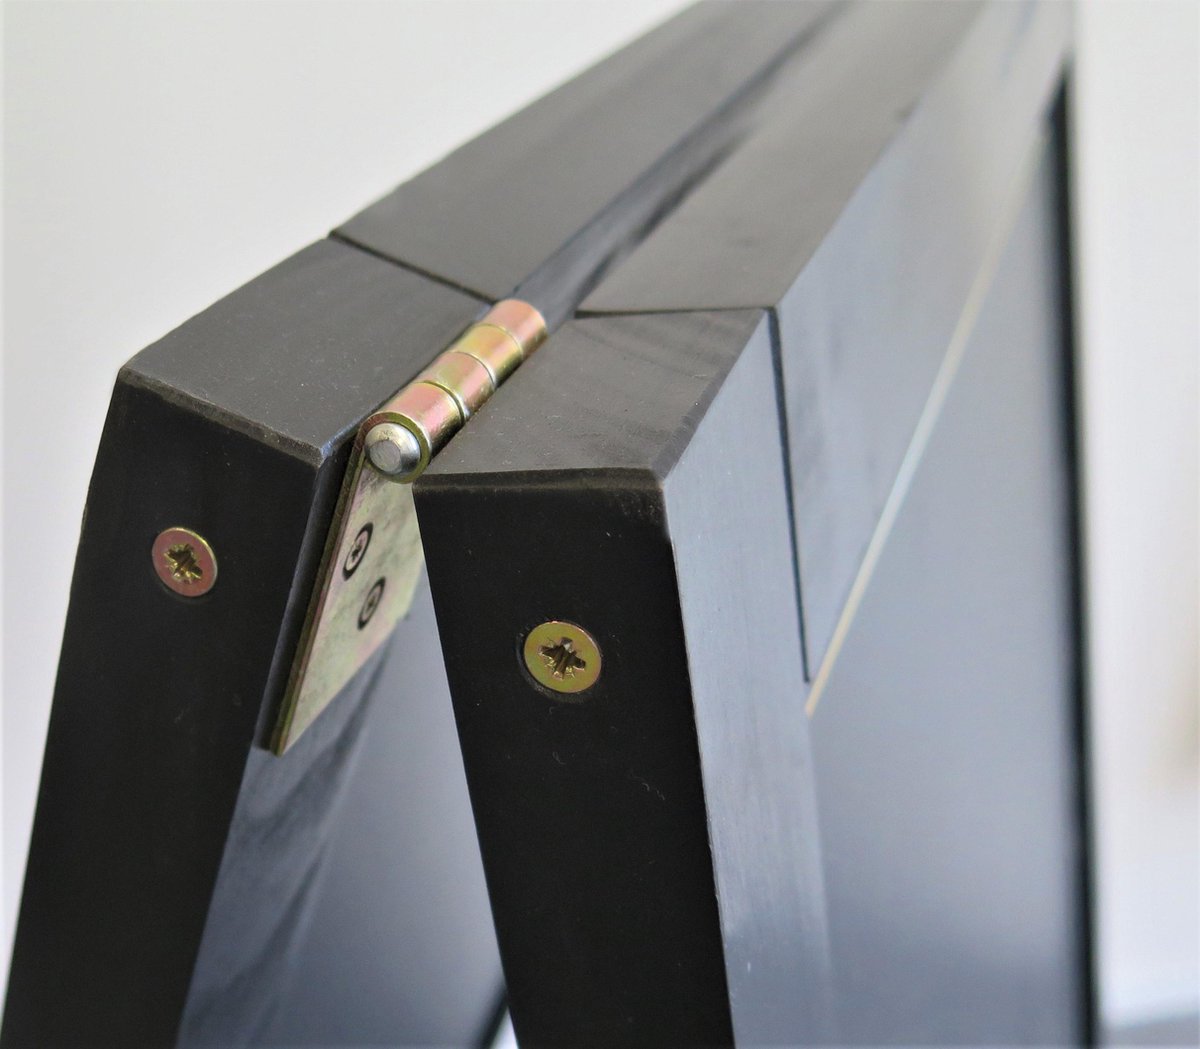 Craie Stoepbord, lourd cadre en bois 4 cm. gros, grosse. et 2 cm